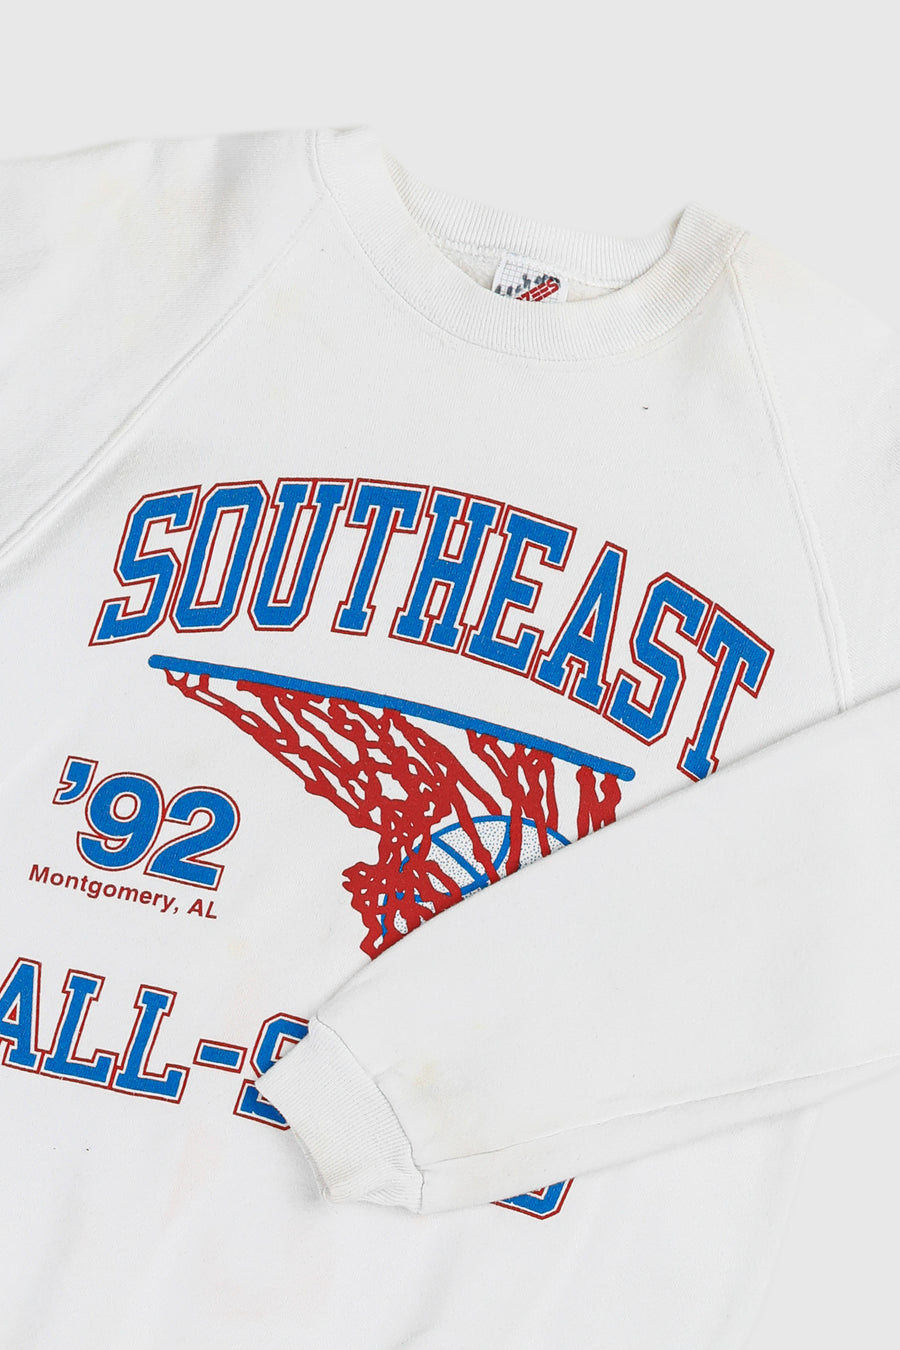 Vintage Southeast All-Stars Sweatshirt - Women's S